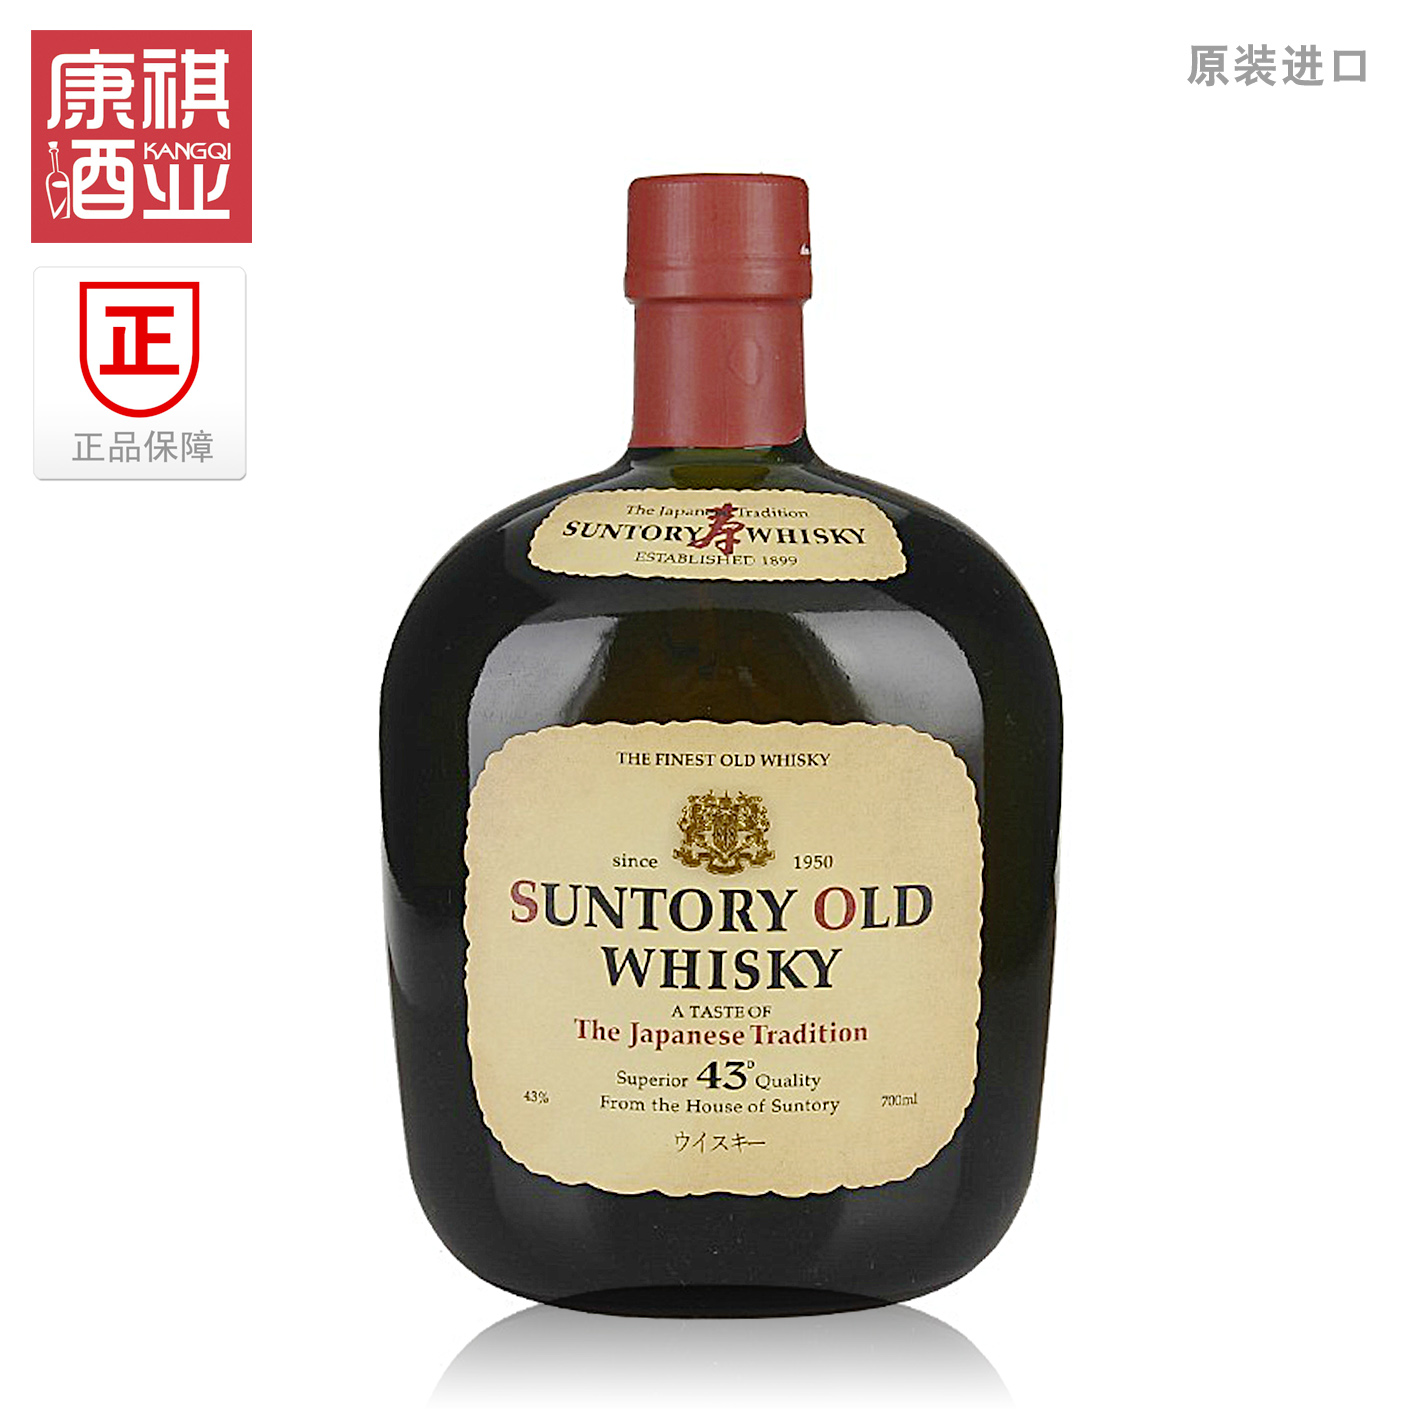 日本进口洋酒三得利老牌威士忌Suntory OLD Whisky正品保证700ml折扣优惠信息